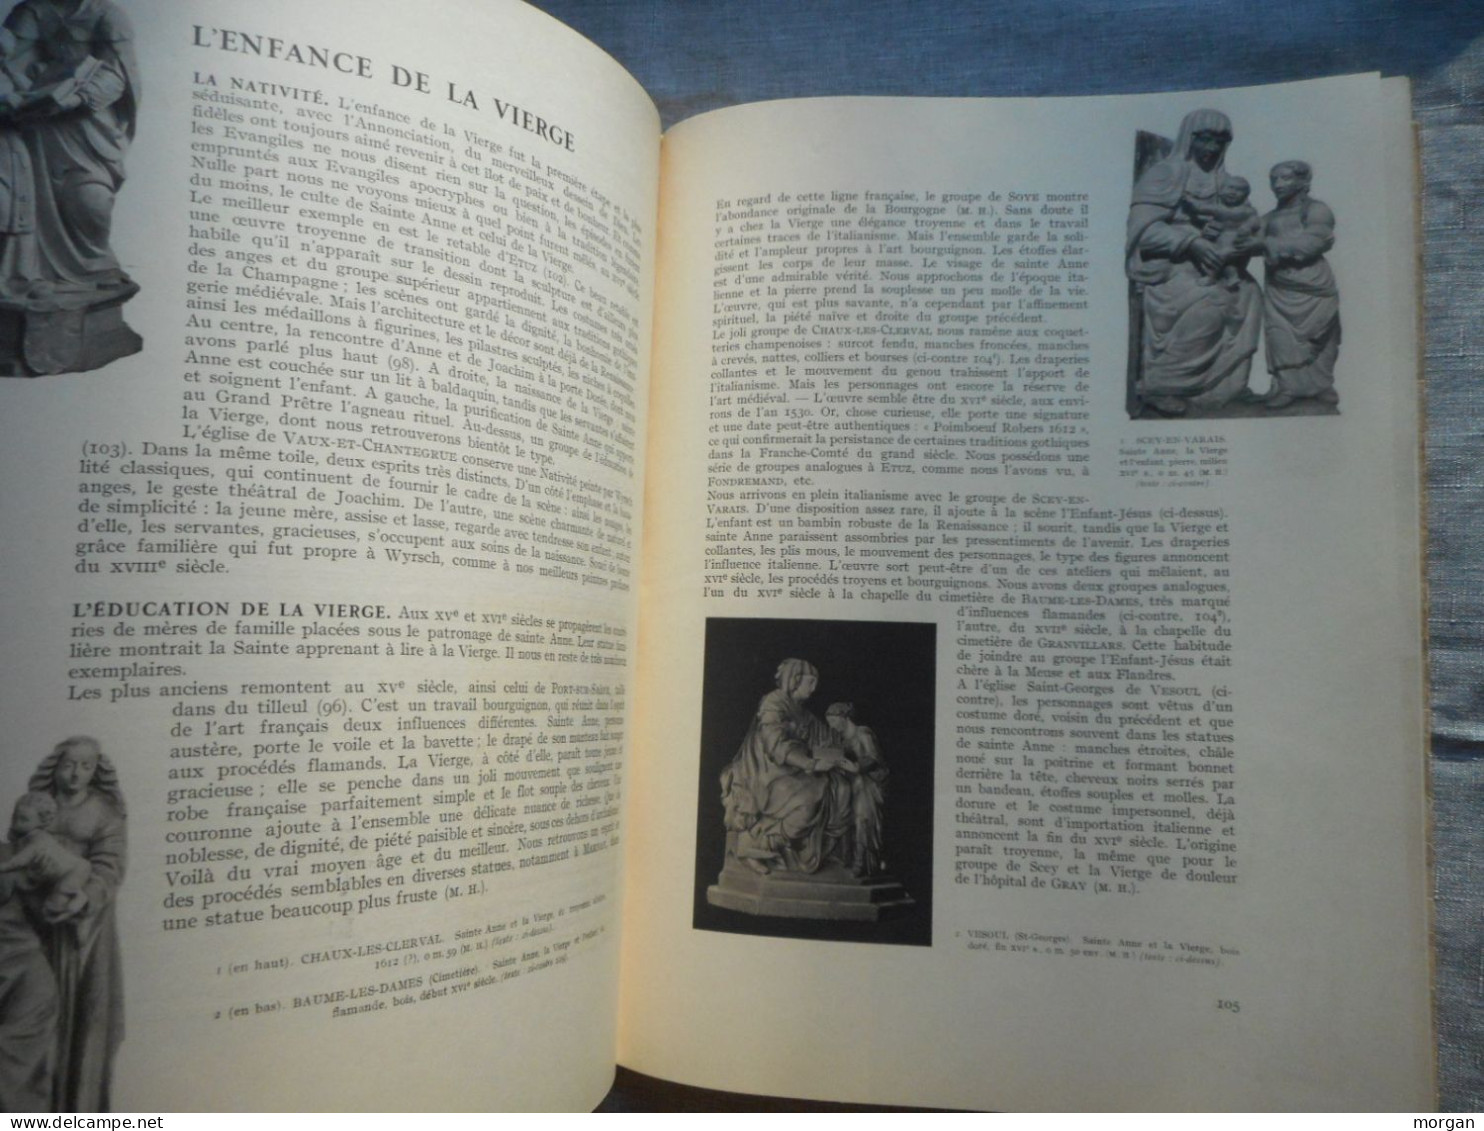 FRANCHE COMTE, VIERGES COMTOISES, MARCEL FERRY 1946, CULTE ET IMAGES DE LA VIERGE - Unclassified